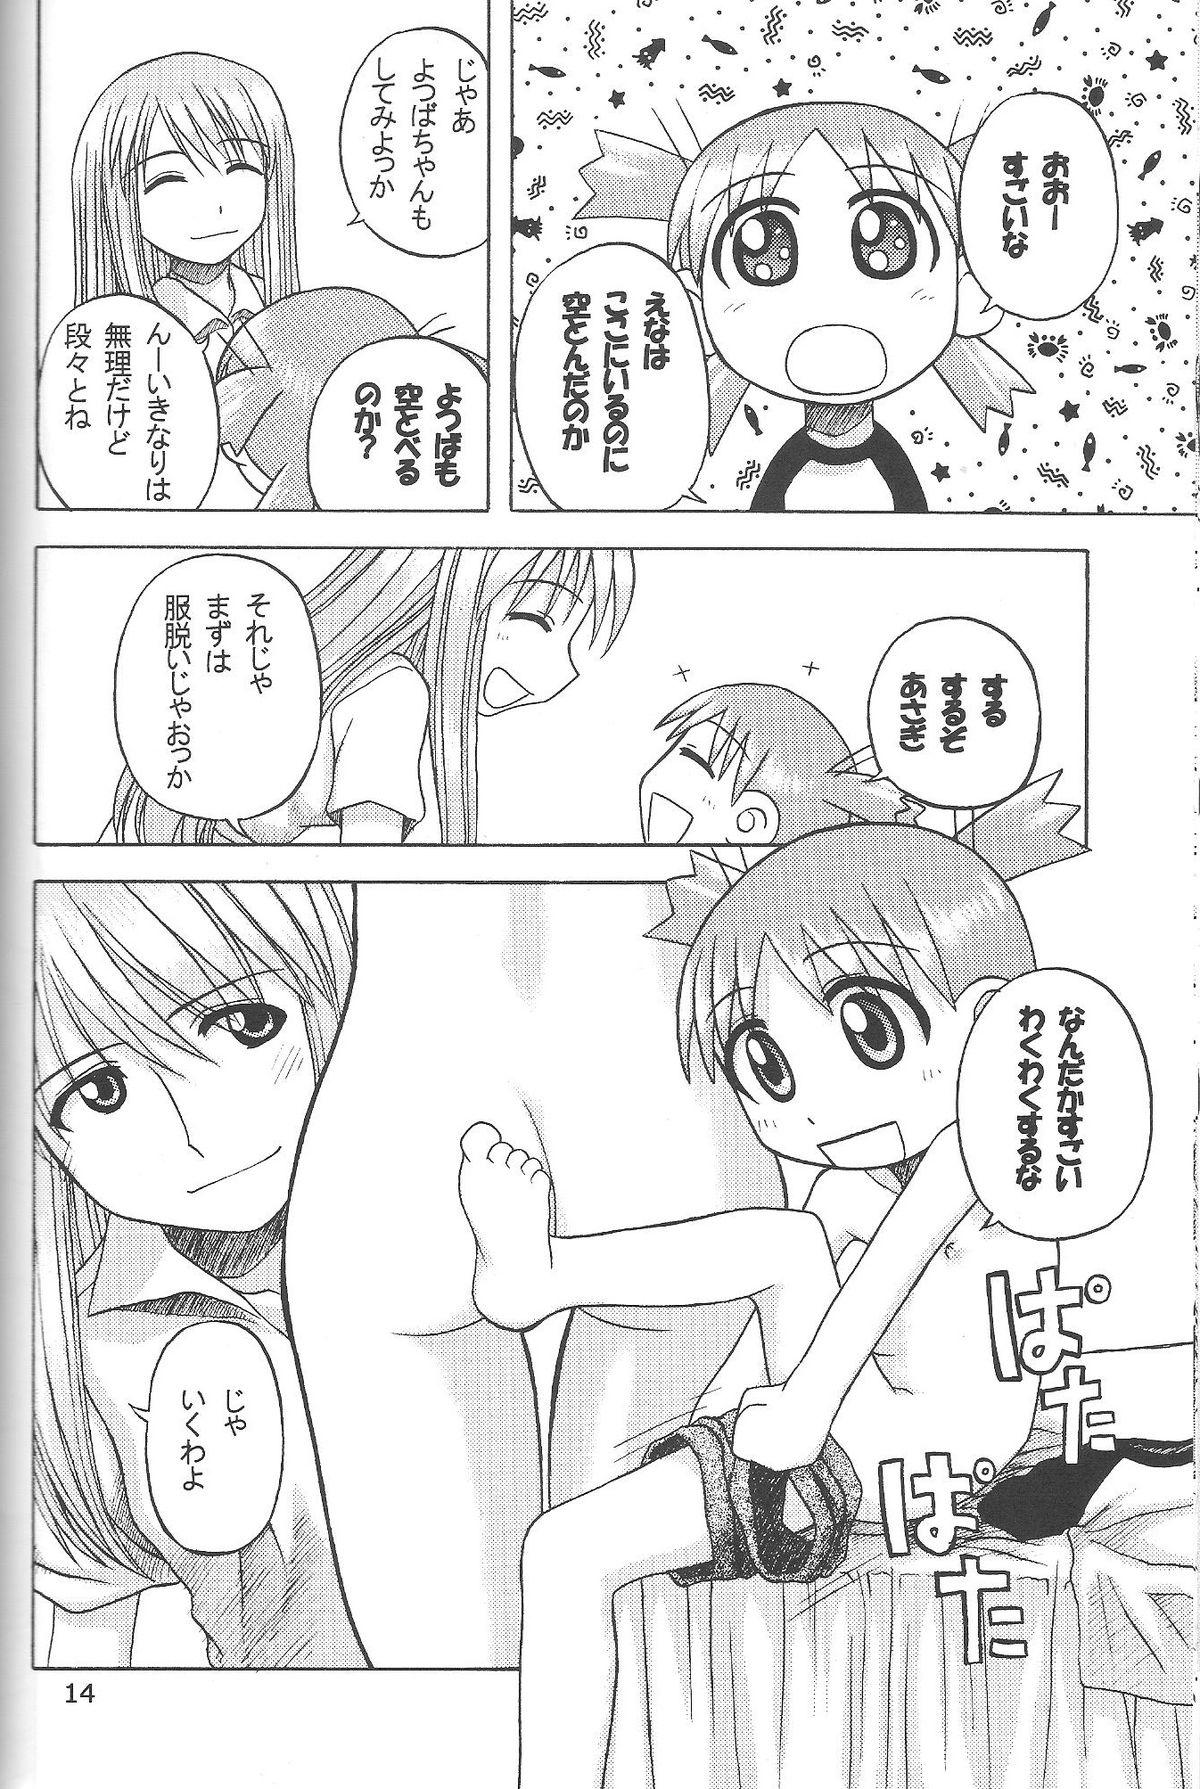 Handjob Happy Smile - Yotsubato Metendo - Page 13